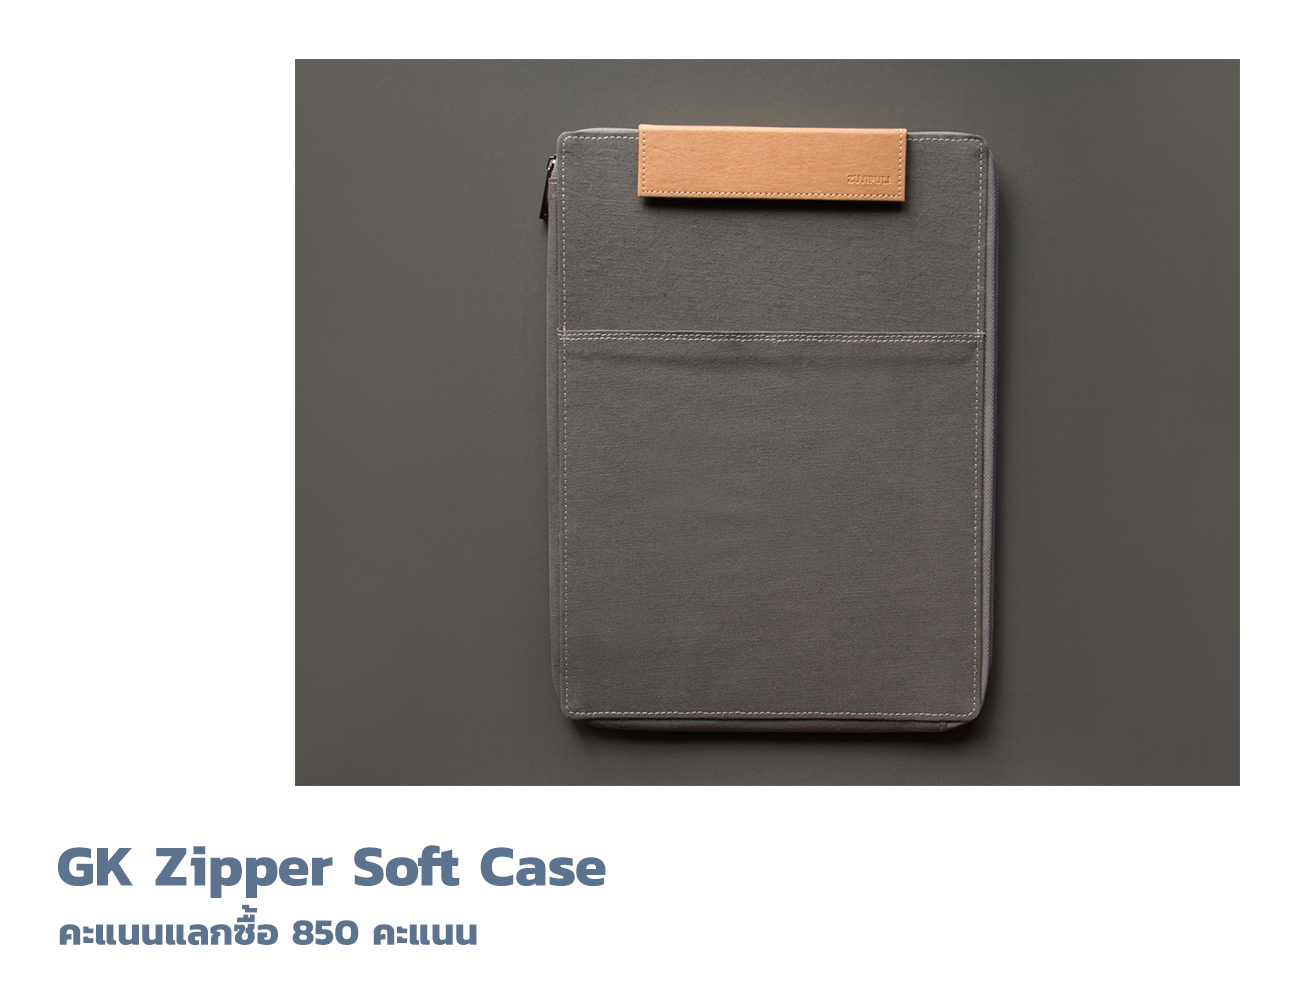  GK Zipper Soft Case